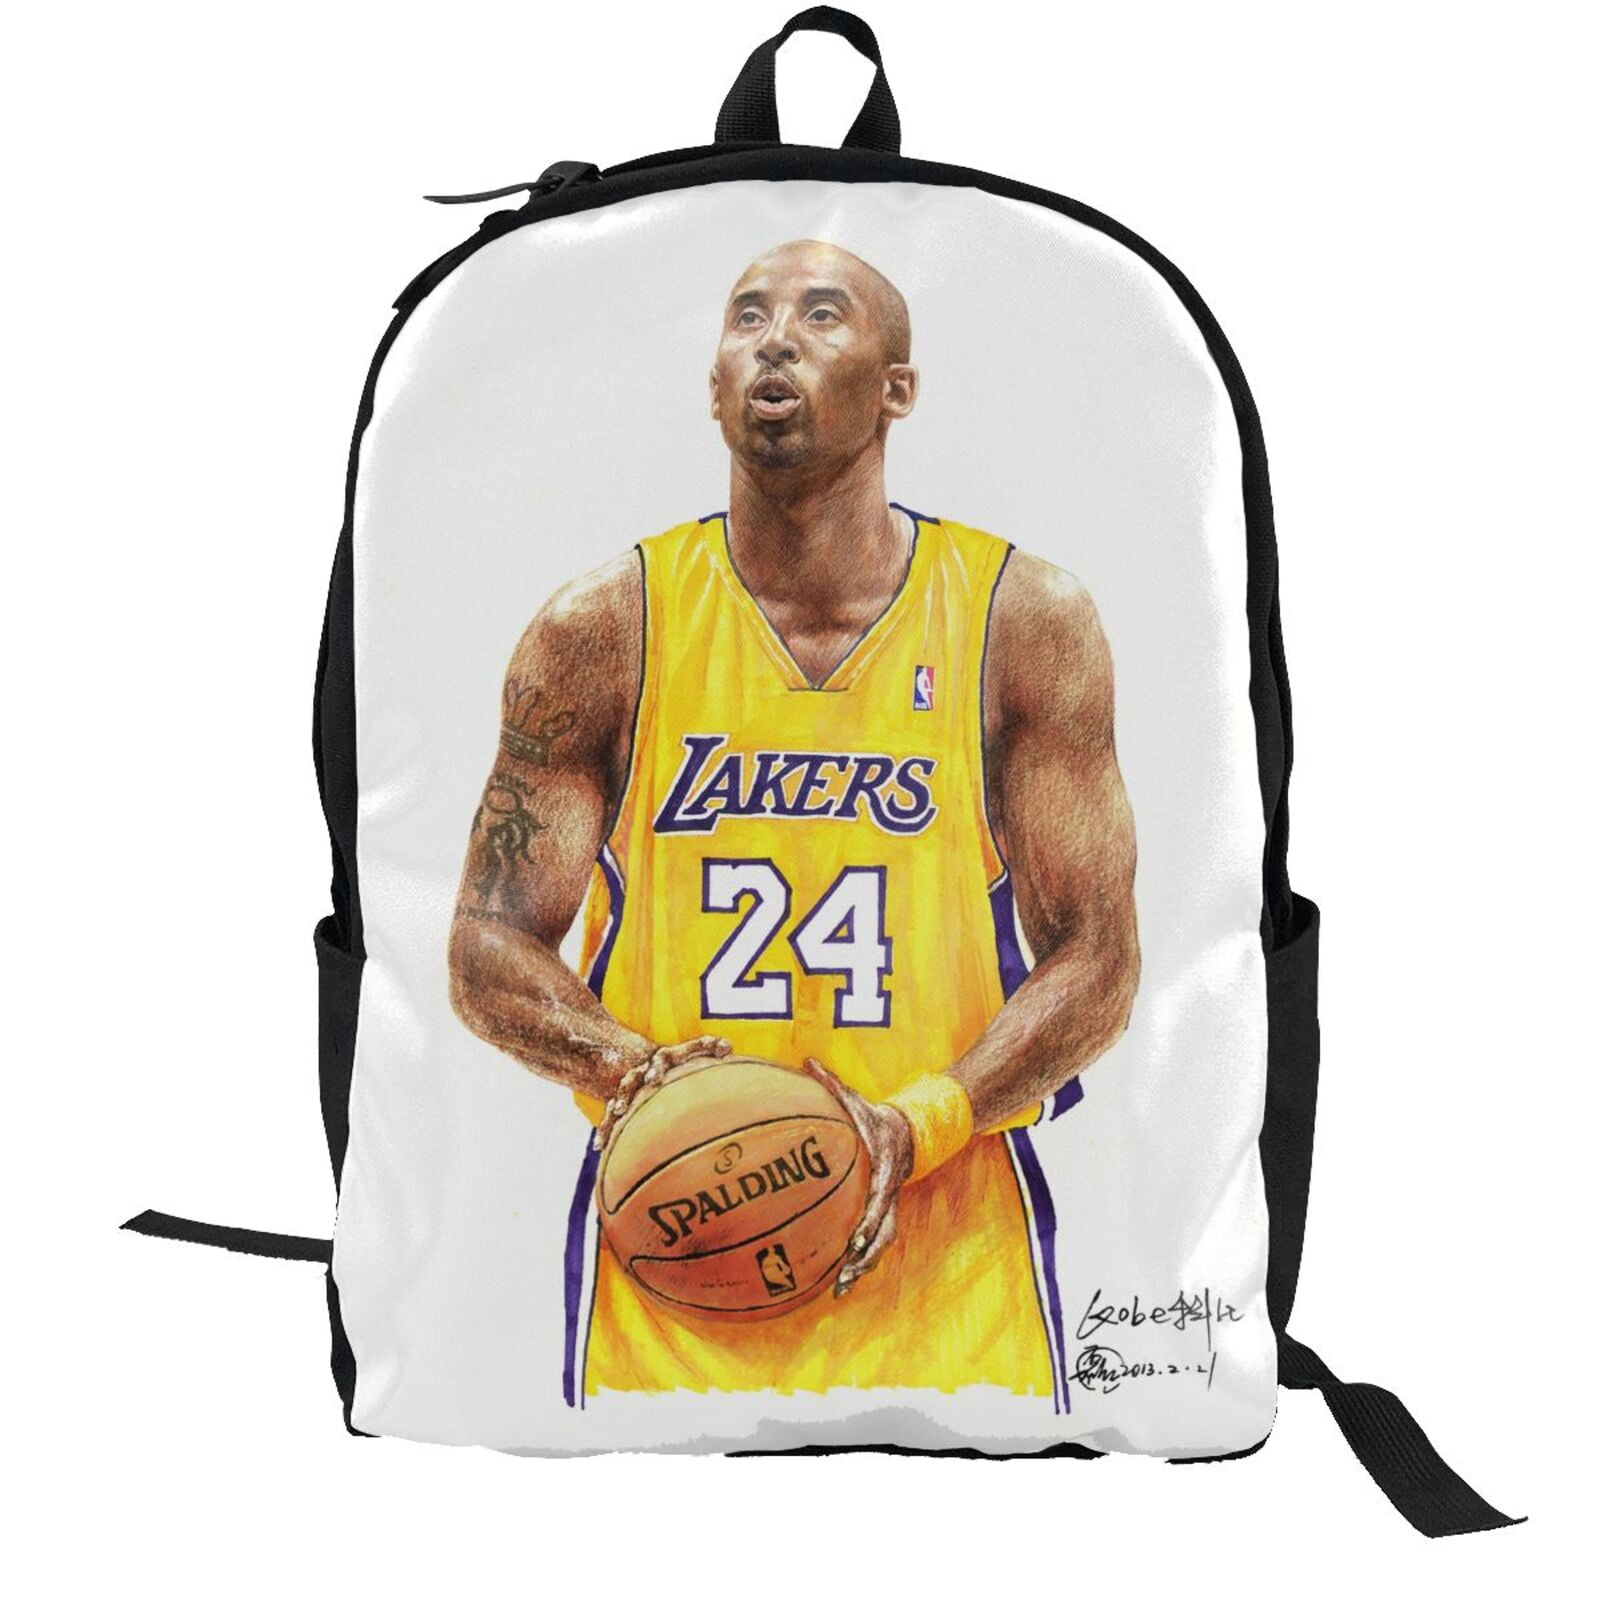 Spalding Crossbag Functional Basketball Chest Rucksack Kit Phone Holder Bag 